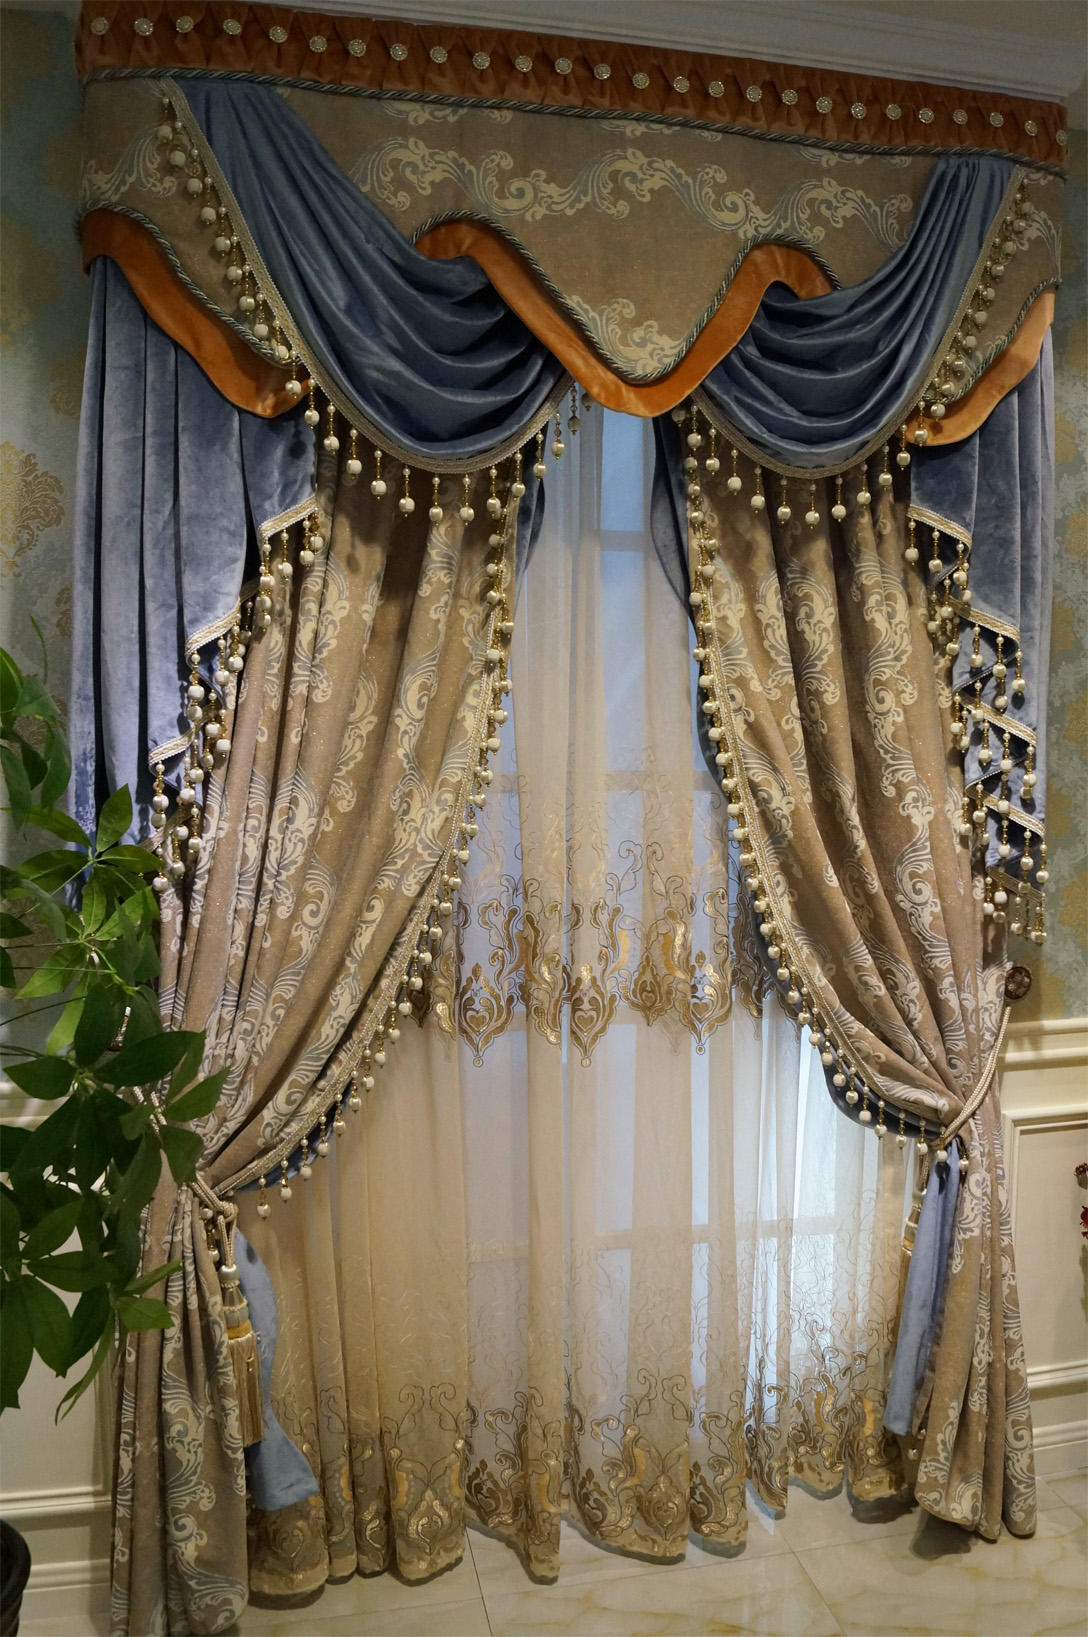 伊莎莱-简欧风客厅窗帘效果图-客厅窗帘图片